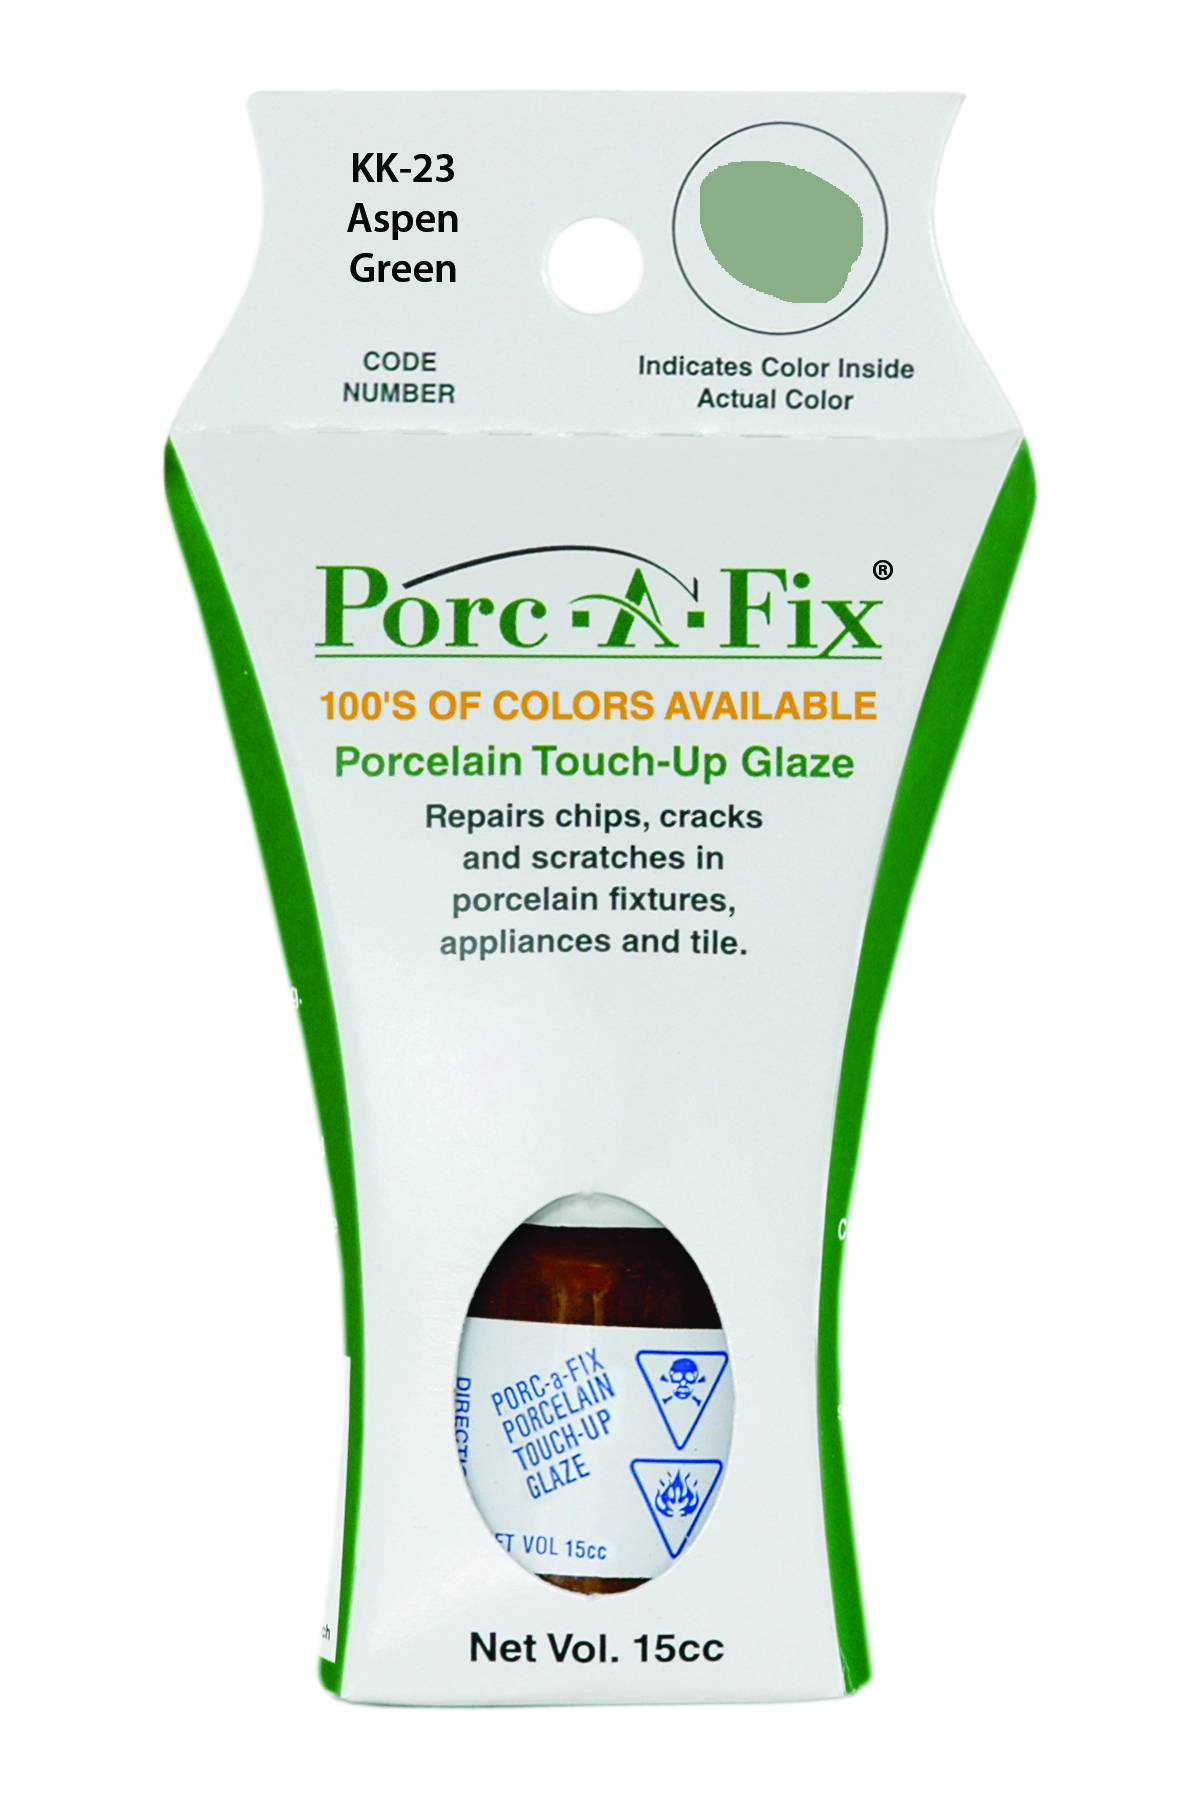 Fixture-Fix | KK-23 | Porc-A-Fix Touch-Up Glaze Kohler Aspen Green - Compatible with Kohler K-500306-42 Touch Up Paint Kit - ASPEN GREEN